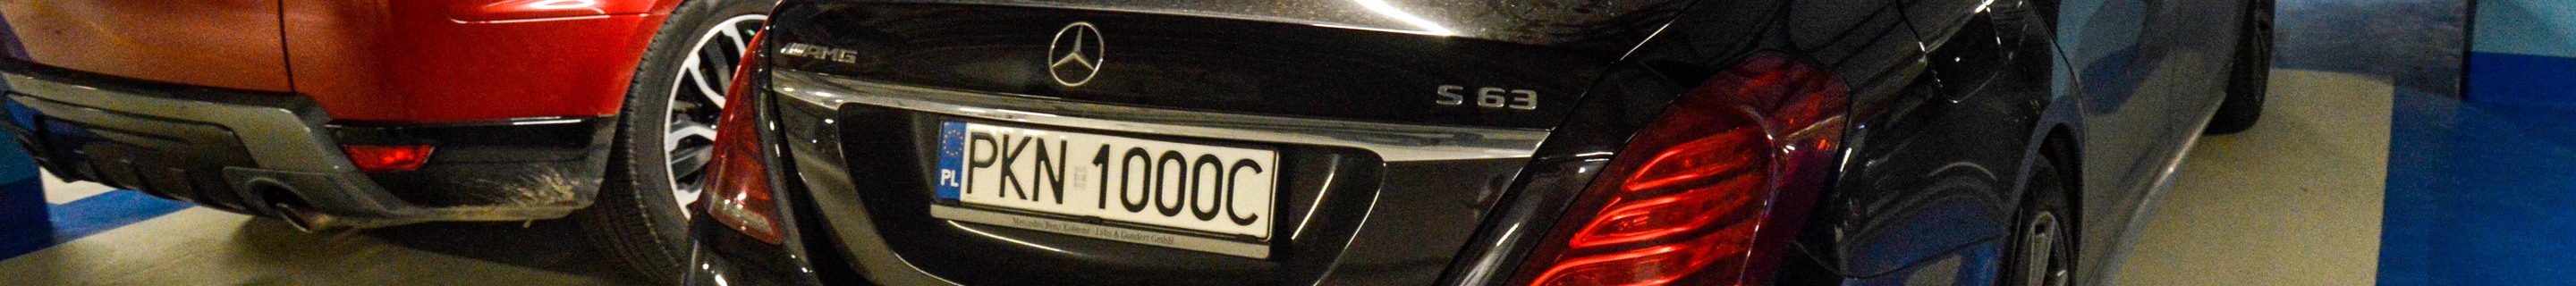 Mercedes-AMG S 63 V222